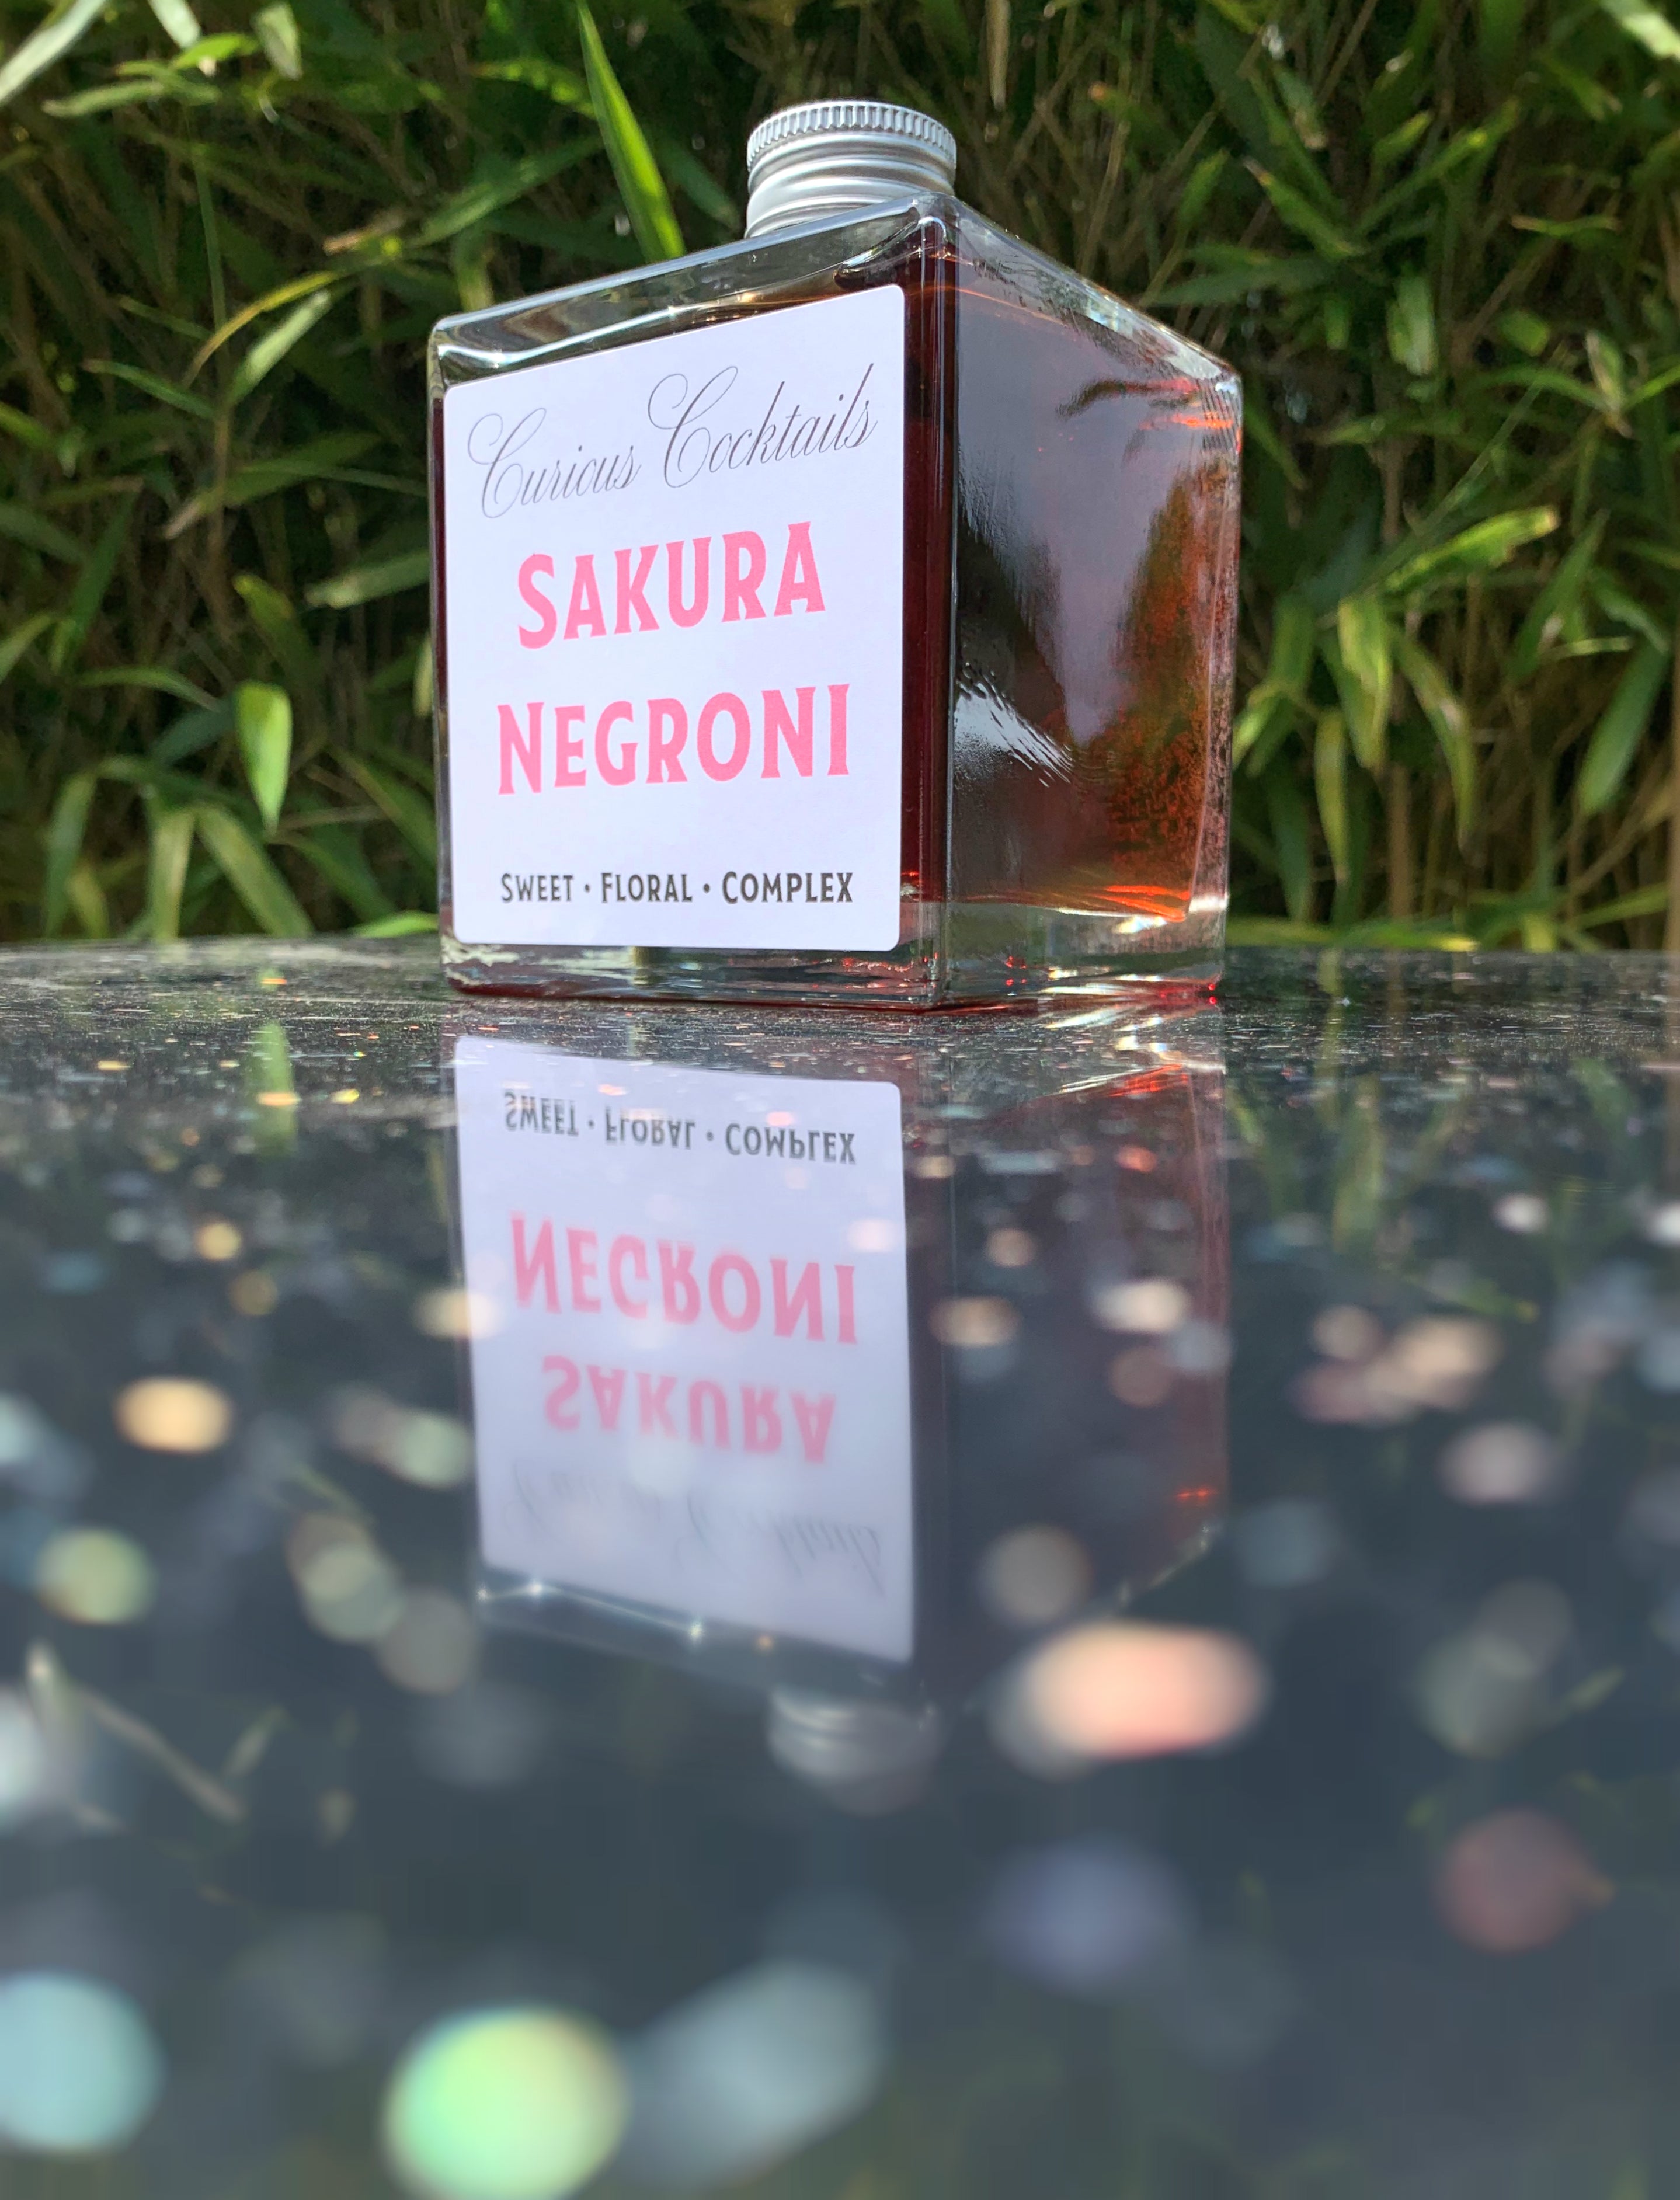 Curious Cocktails: Sakura Negroni